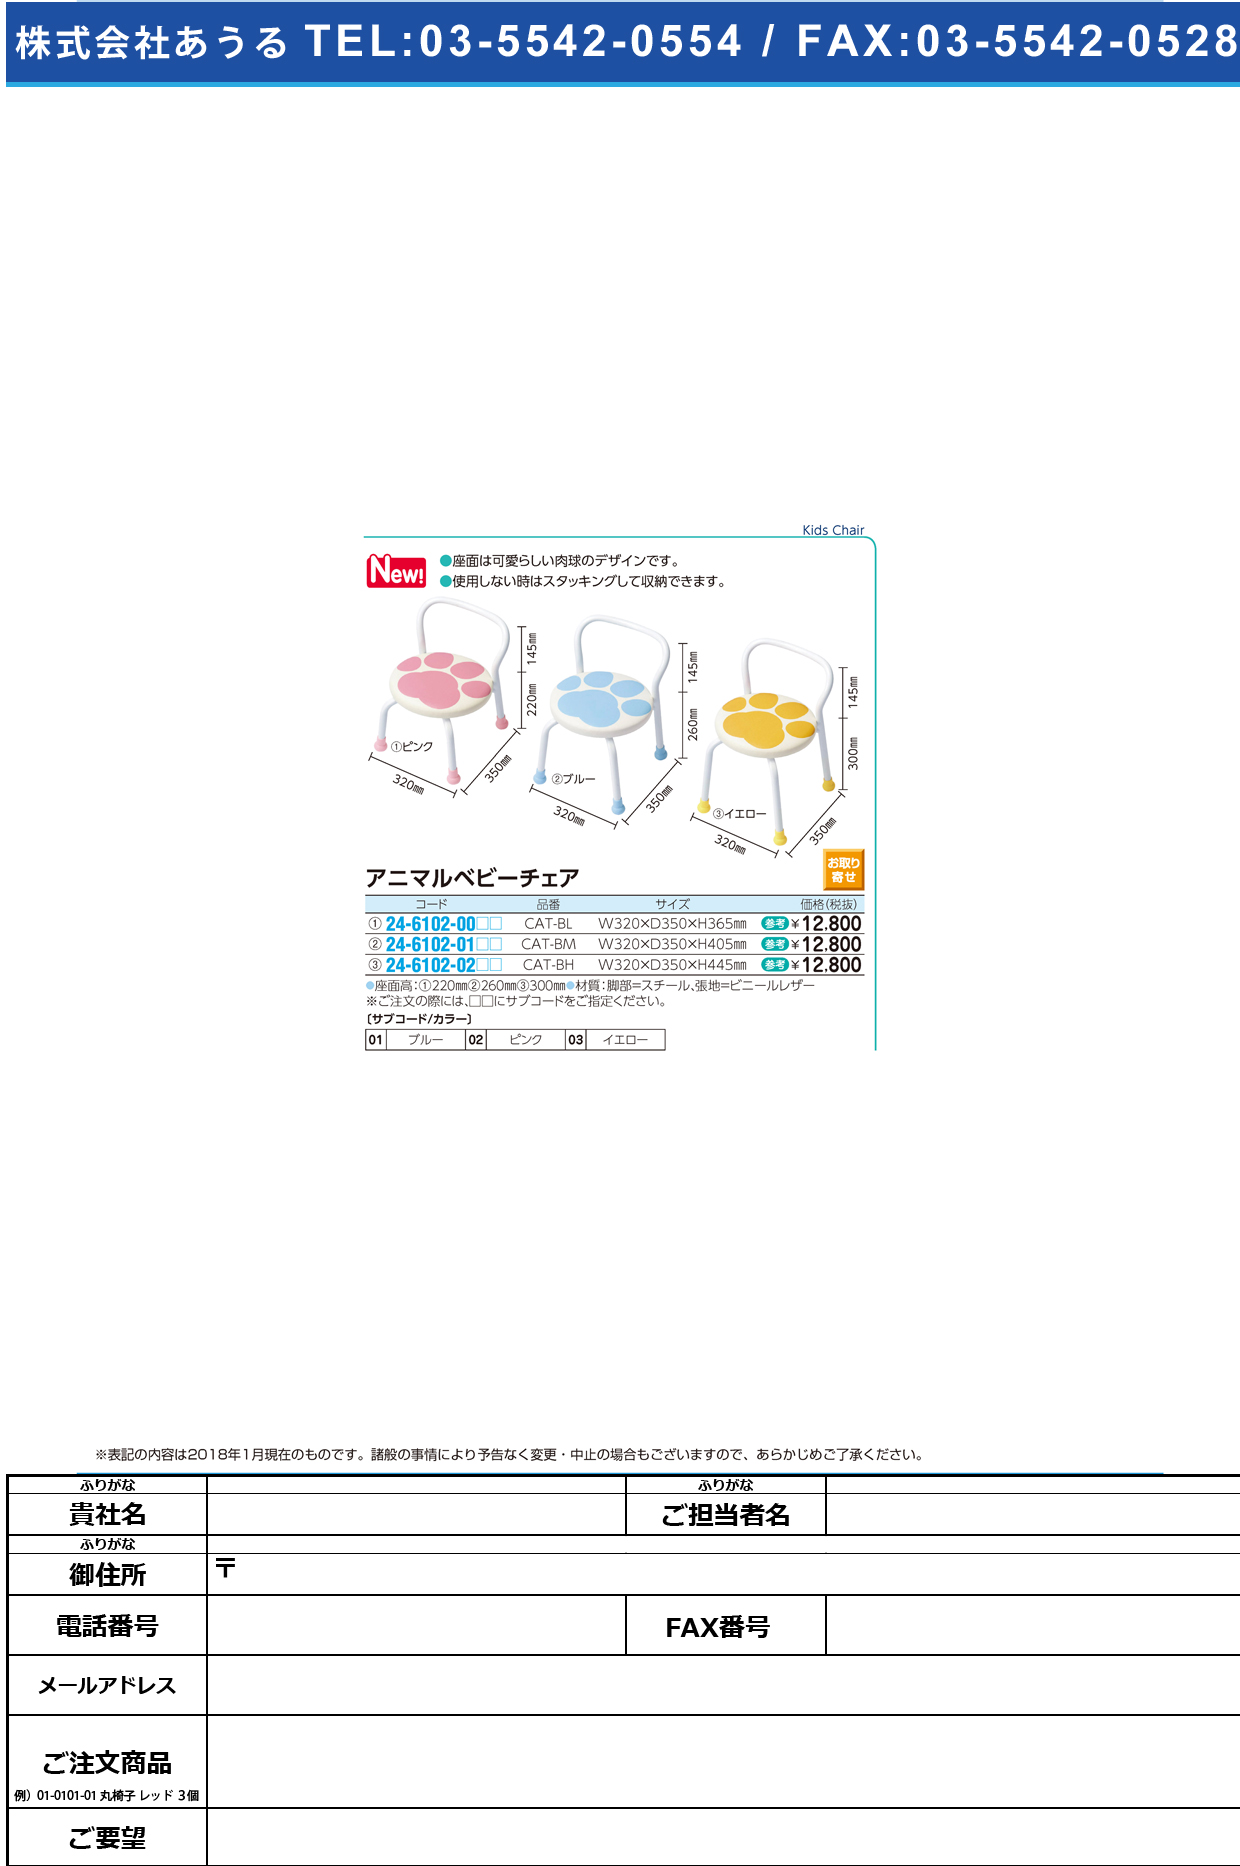 (24-6102-01)アニマルベビーチェア CAT-BM(32X35X40.5CM ｱﾆﾏﾙﾍﾞﾋﾞｰﾁｪｱ ブルー【1台単位】【2019年カタログ商品】